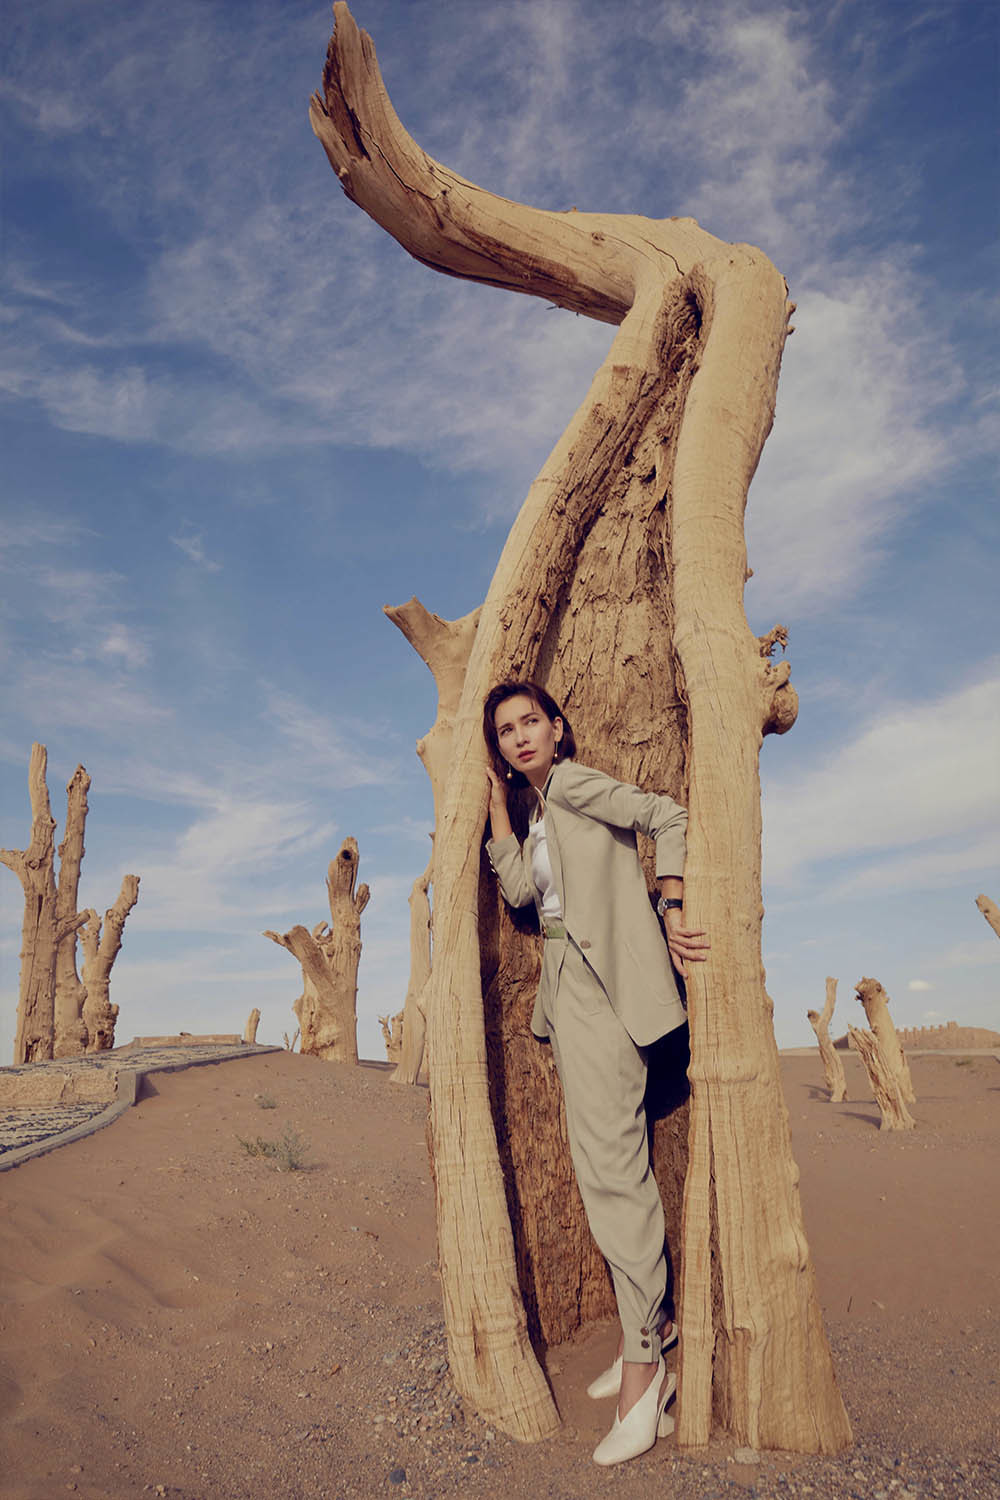 卢靖姗晒出沙漠质感大片 浅色西装诠释自我态度